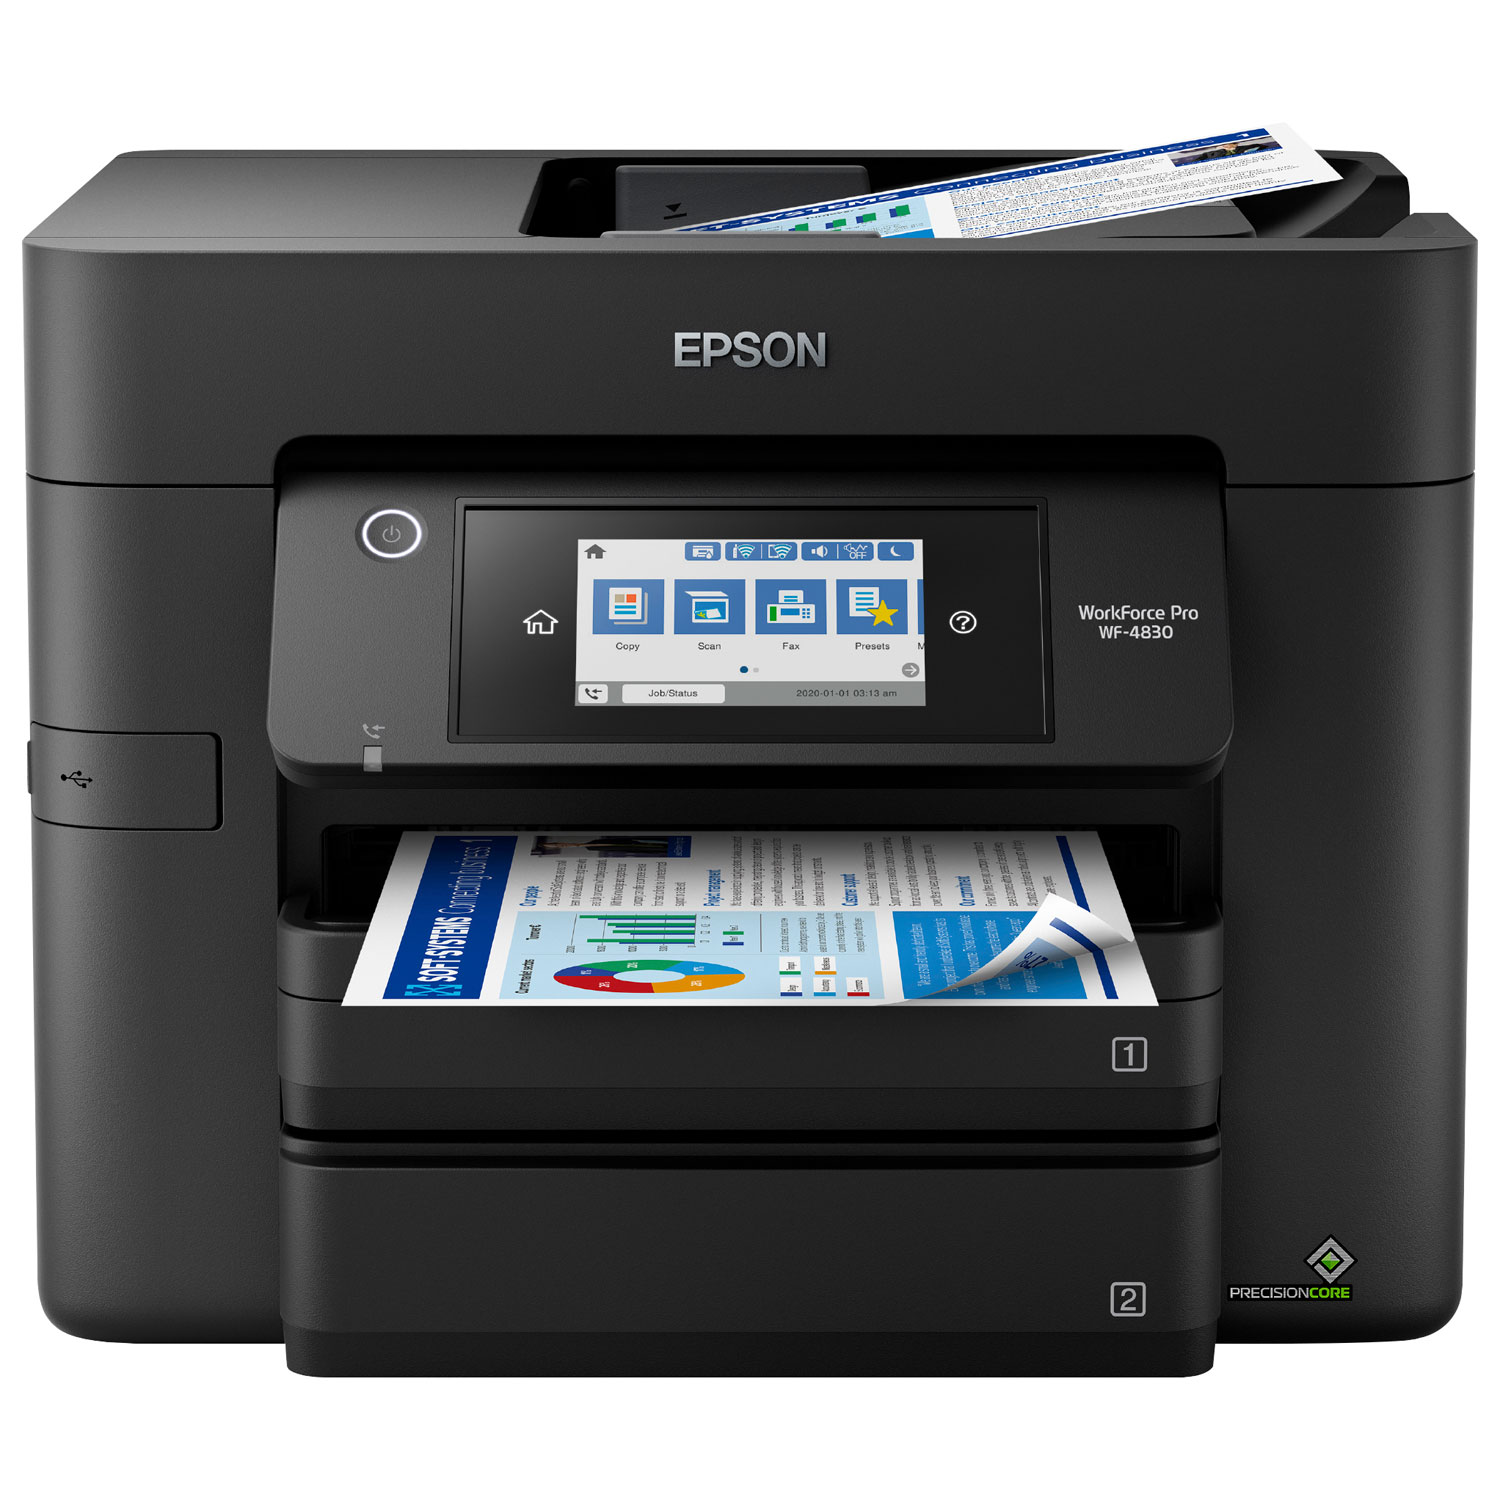 Epson WorkForce Pro WF-4830 Wireless All-In-One Inkjet Printer